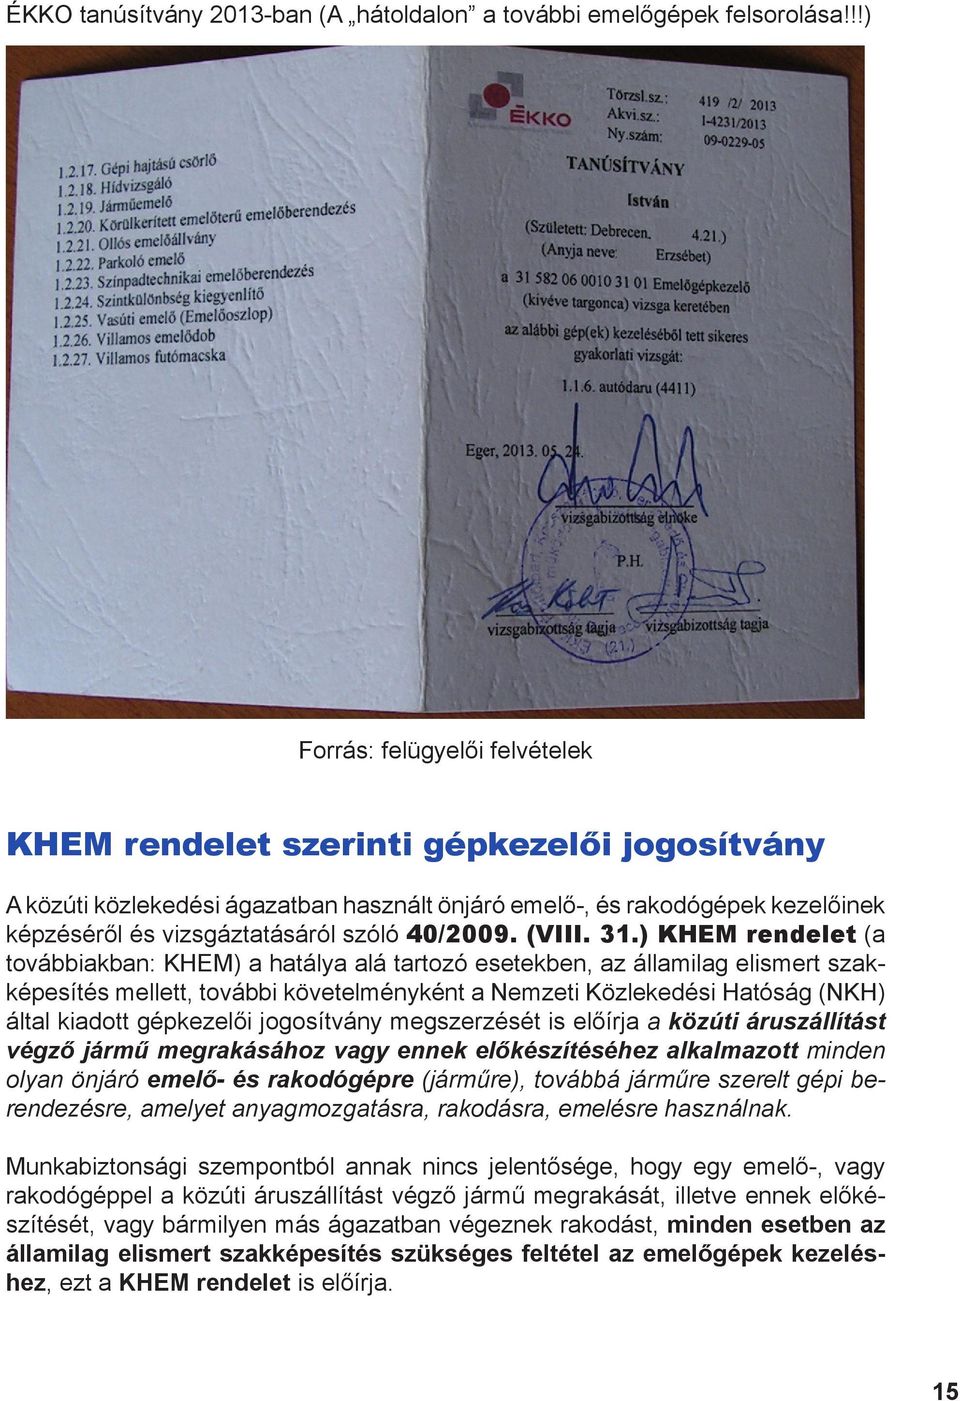 ) KHEM rendelet (a továbbiakban: KHEM) a hatálya alá tartozó esetekben, az államilag elismert szakképesítés mellett, további követelményként a Nemzeti Közlekedési Hatóság (NKH) által kiadott